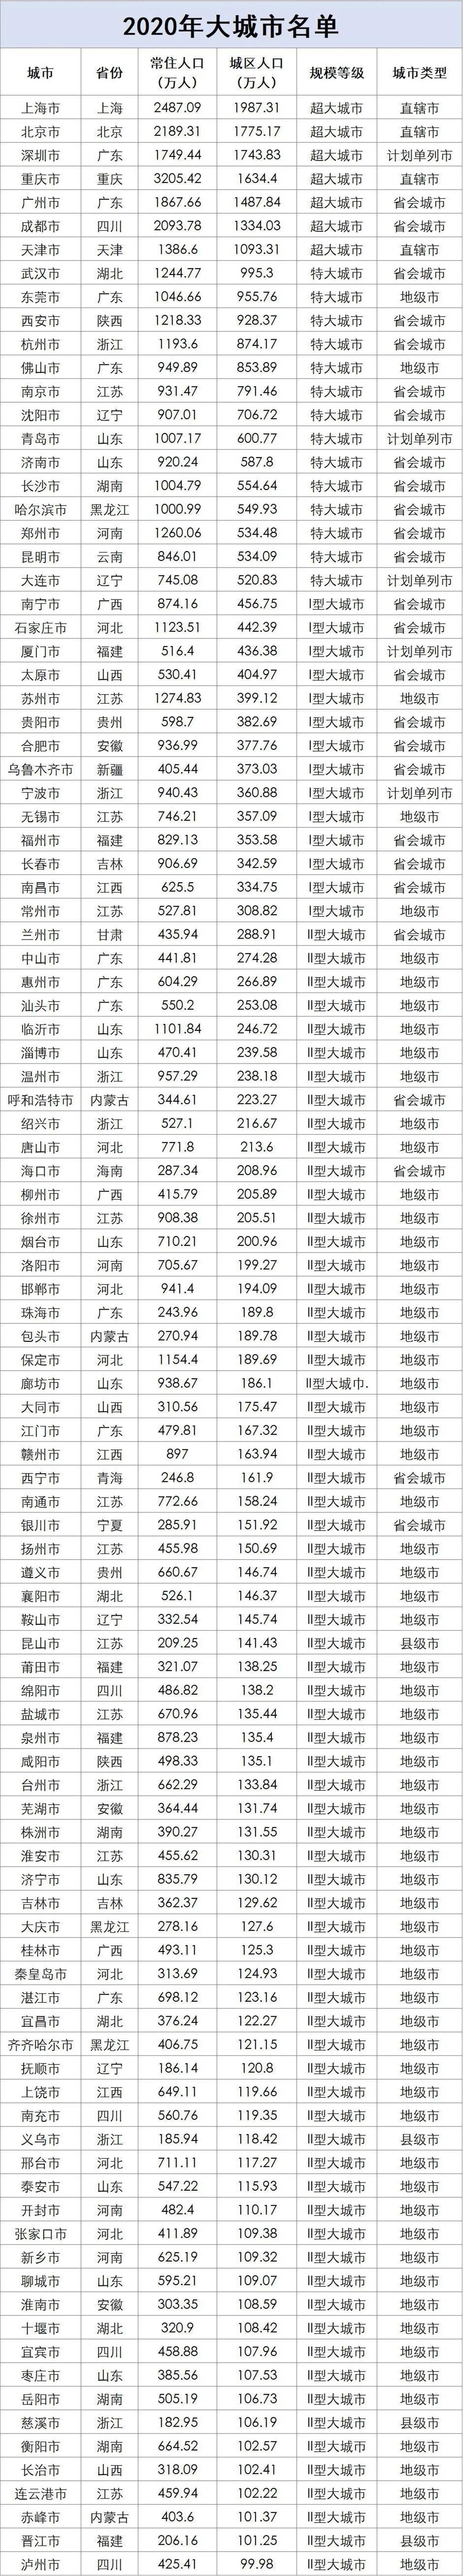 中国各城市人口数量排名最新数据图表，中国百座大城市名单排名特大城市百盛娱乐官网
有望成为超大城市(图1)